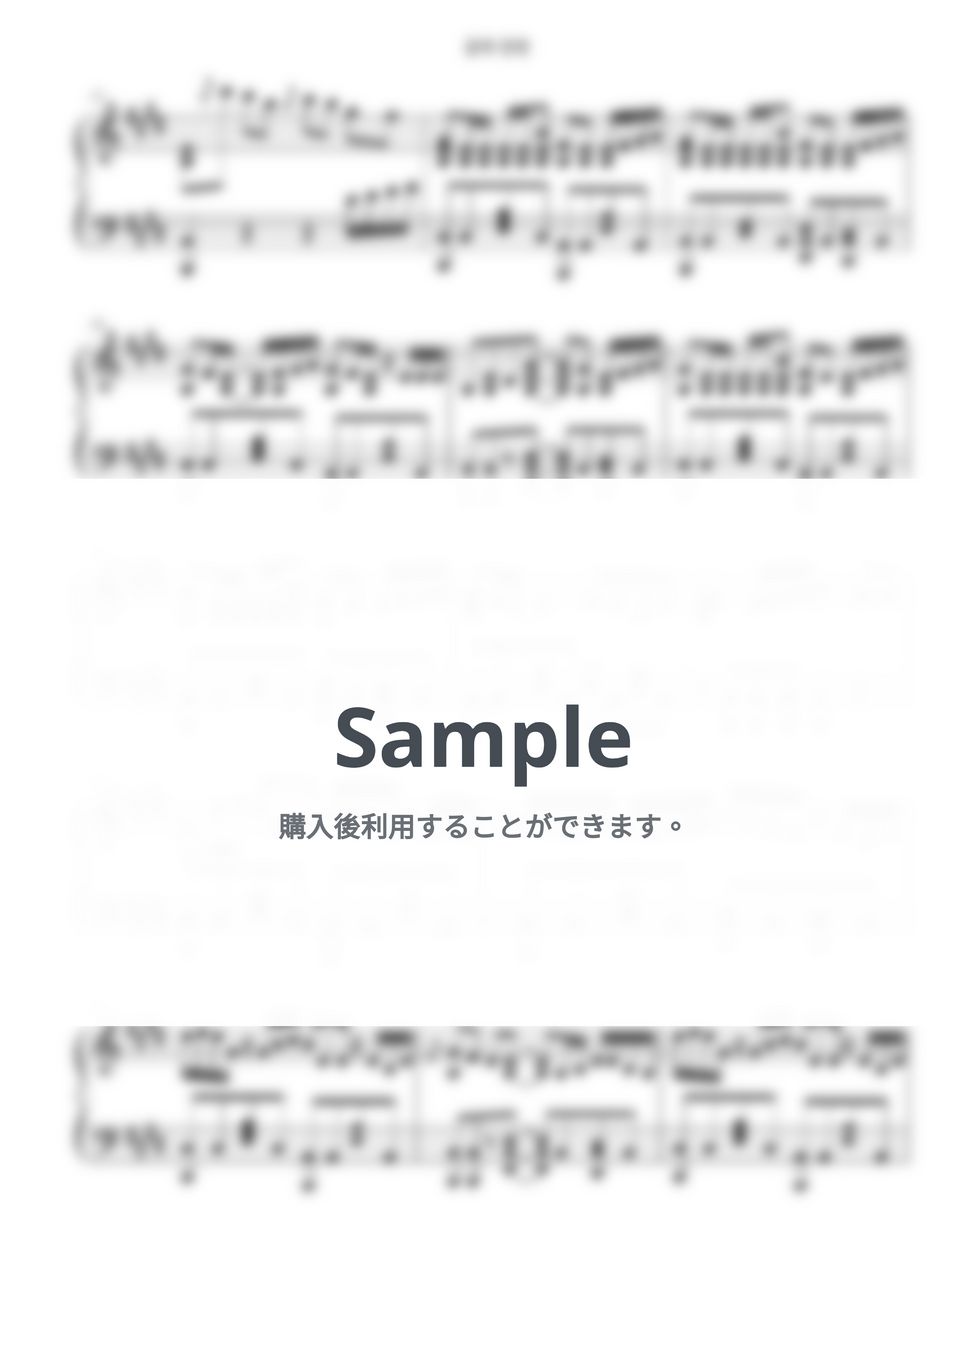 ヨルシカ - 花に亡霊 (泣きたい私は猫をかぶる OST) by Free Space / Anime Piano Covers